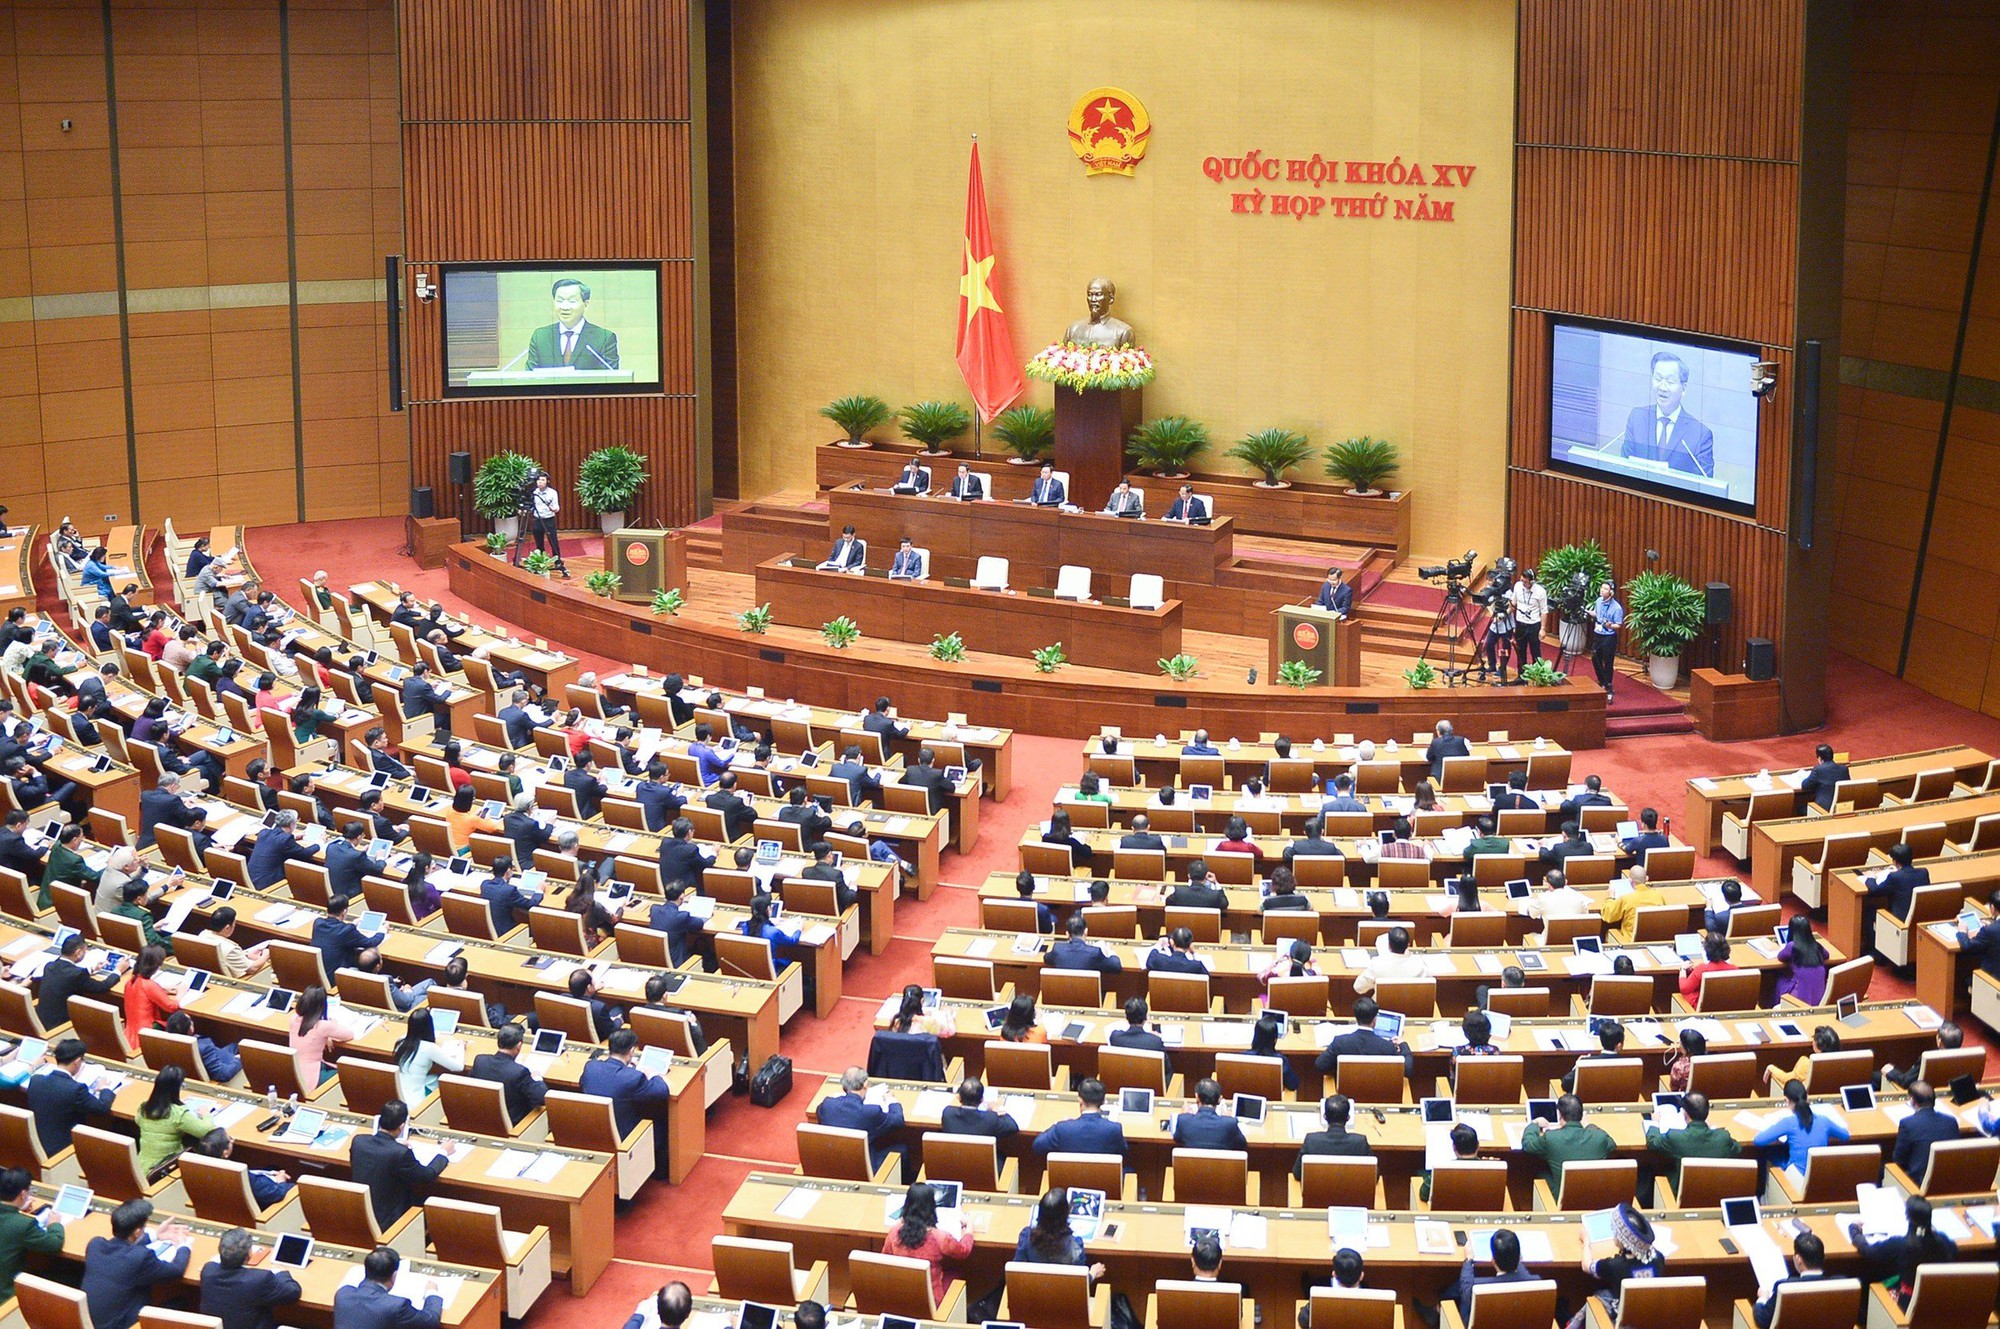 NÓNG: Chính phủ gửi Quốc hội dự thảo Nghị quyết về cơ chế, chính sách đặc thù cho TP HCM - Ảnh 1.